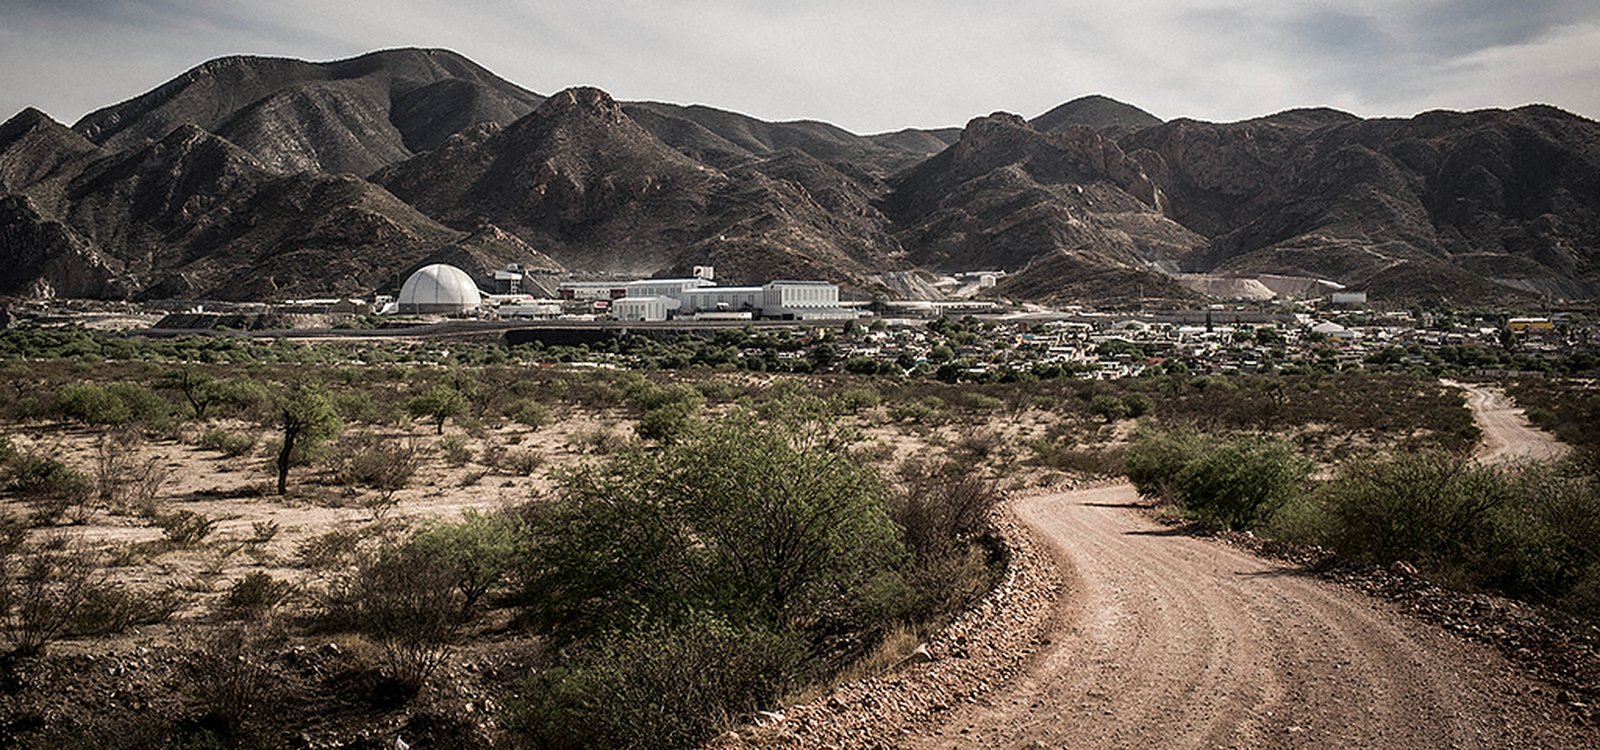 La mina de Velardeña, operada por Industrias Peñoles, ha implementado tecnologías de punta para preservar el abastecimiento de agua en el área y reducir la contaminación del aire. 